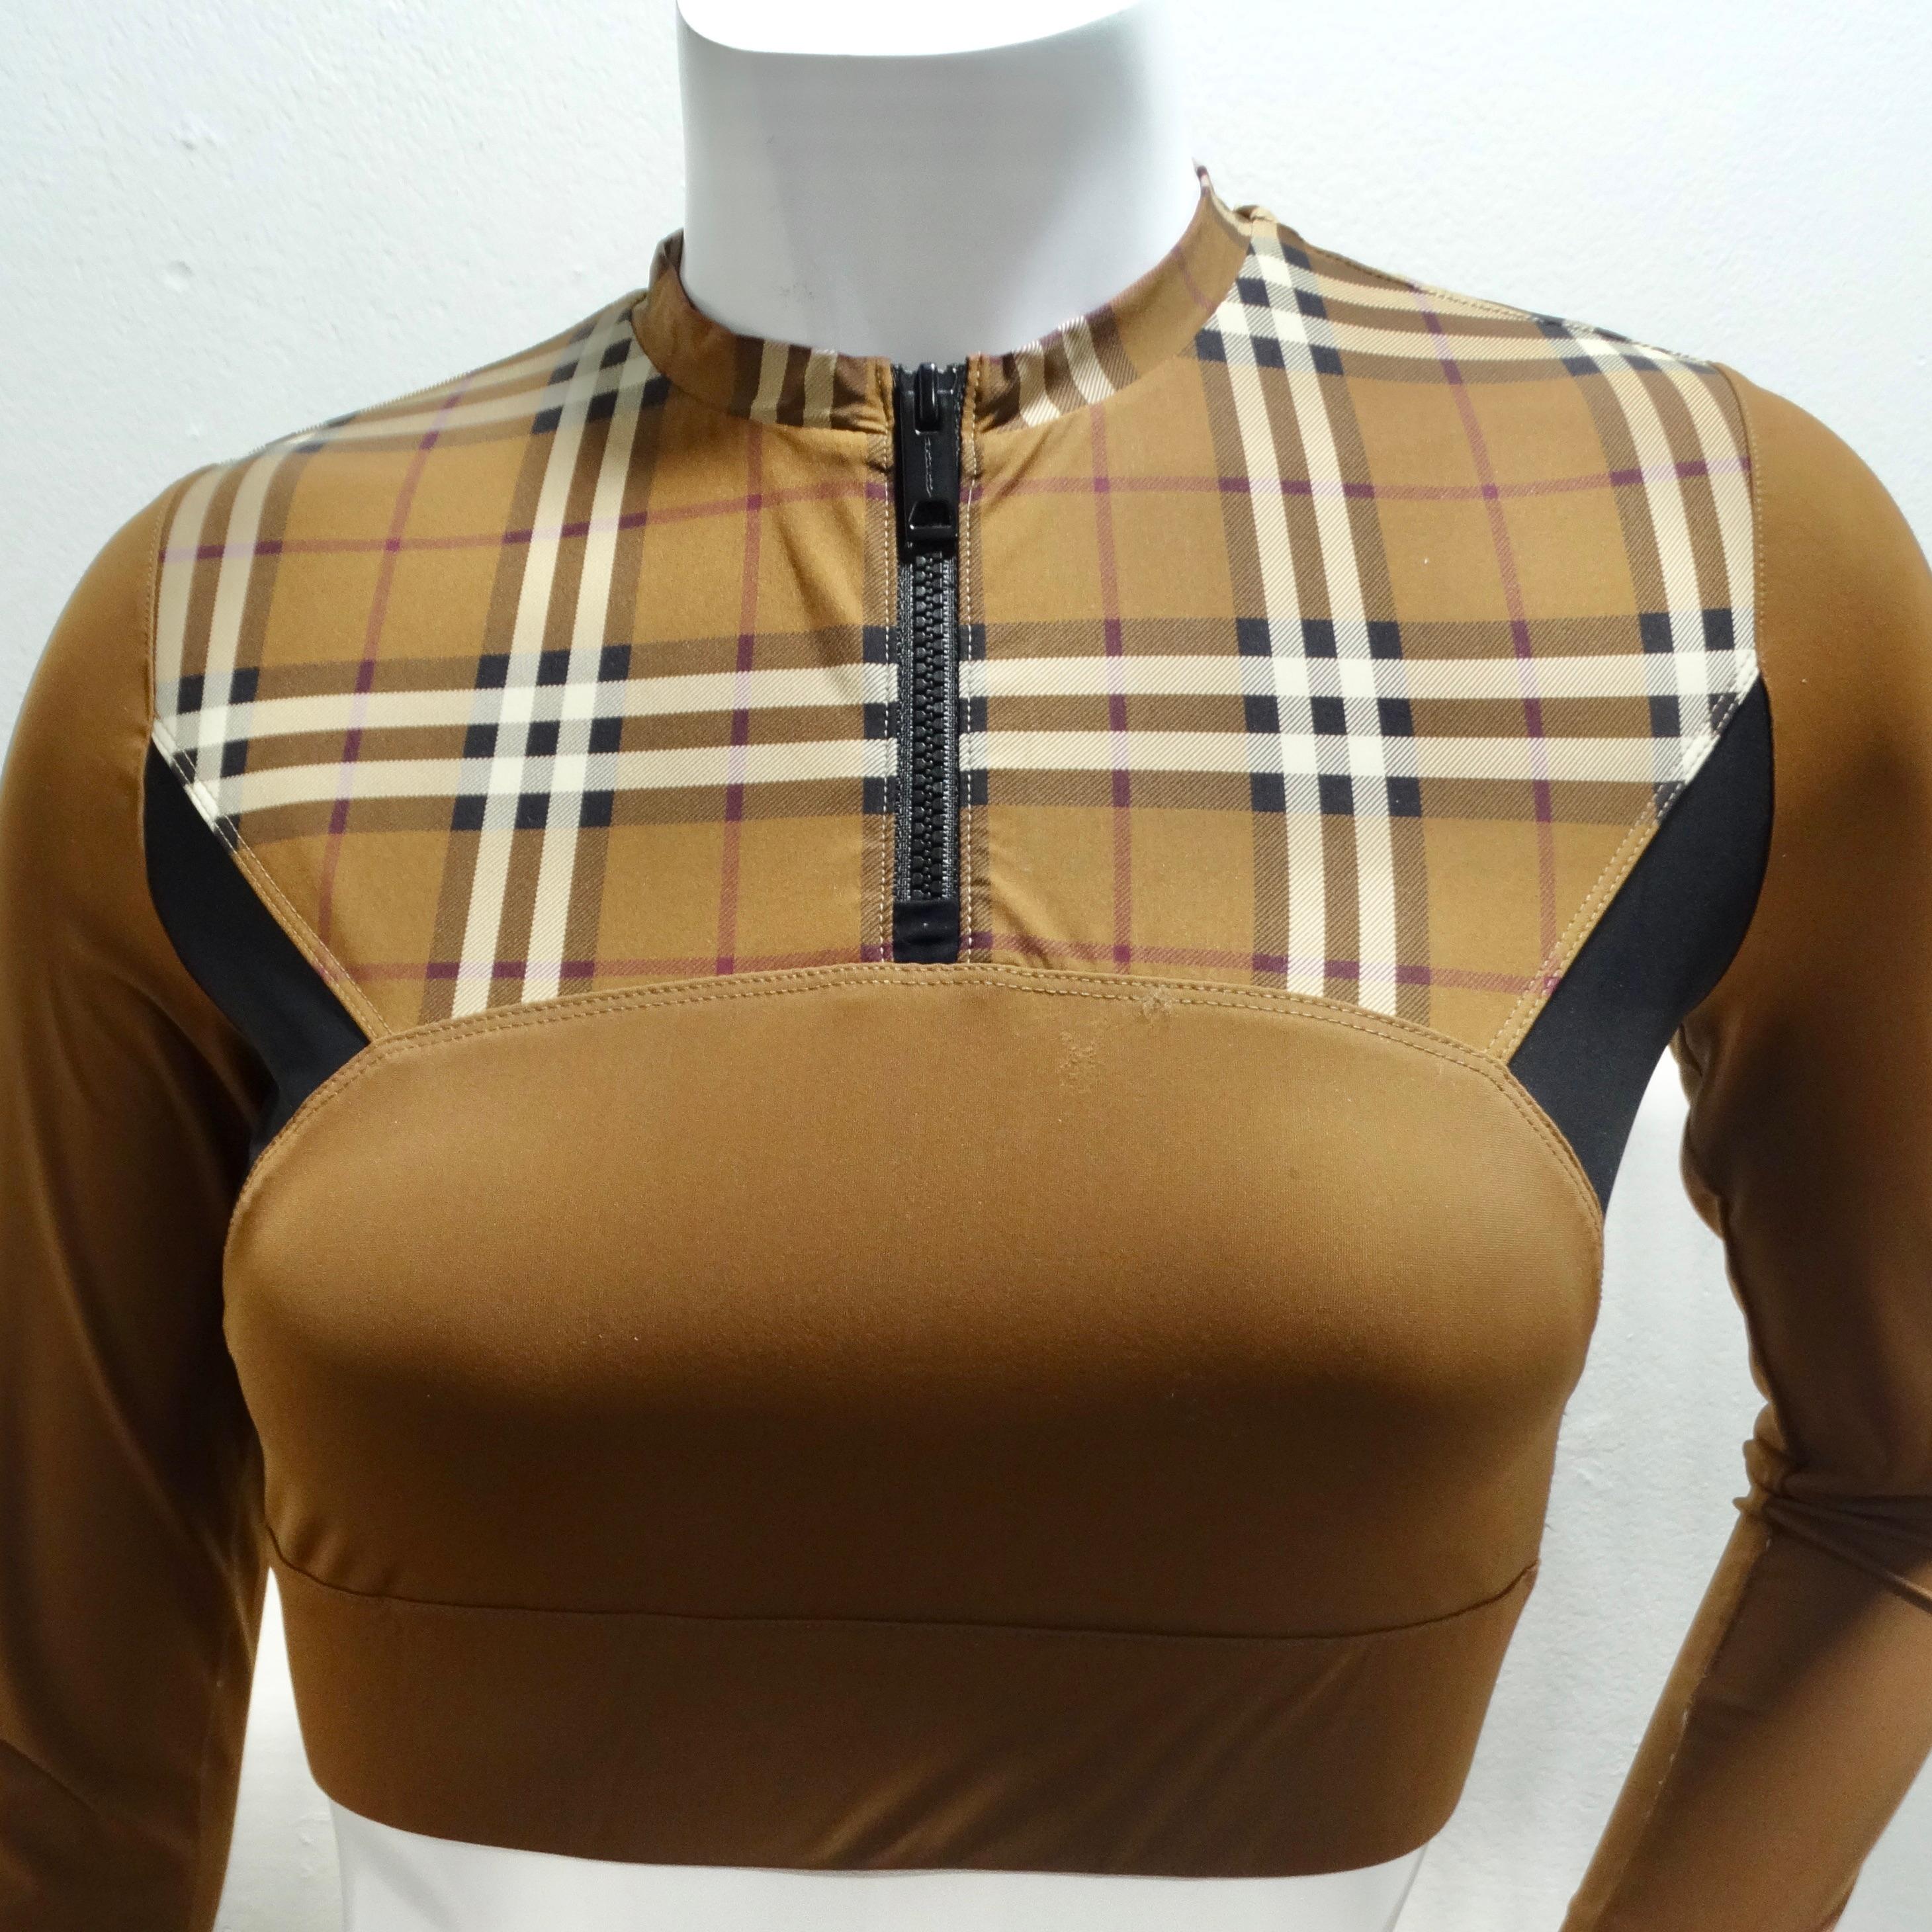 Das Burberry Everley Check Sporty Top ist eine vielseitige und stilvolle Ergänzung Ihrer Garderobe, die sich nahtlos von Trainingskleidung in schicke Freizeitkleidung verwandeln lässt. Dieses langärmelige, taillierte Oberteil in einem hellbraunen